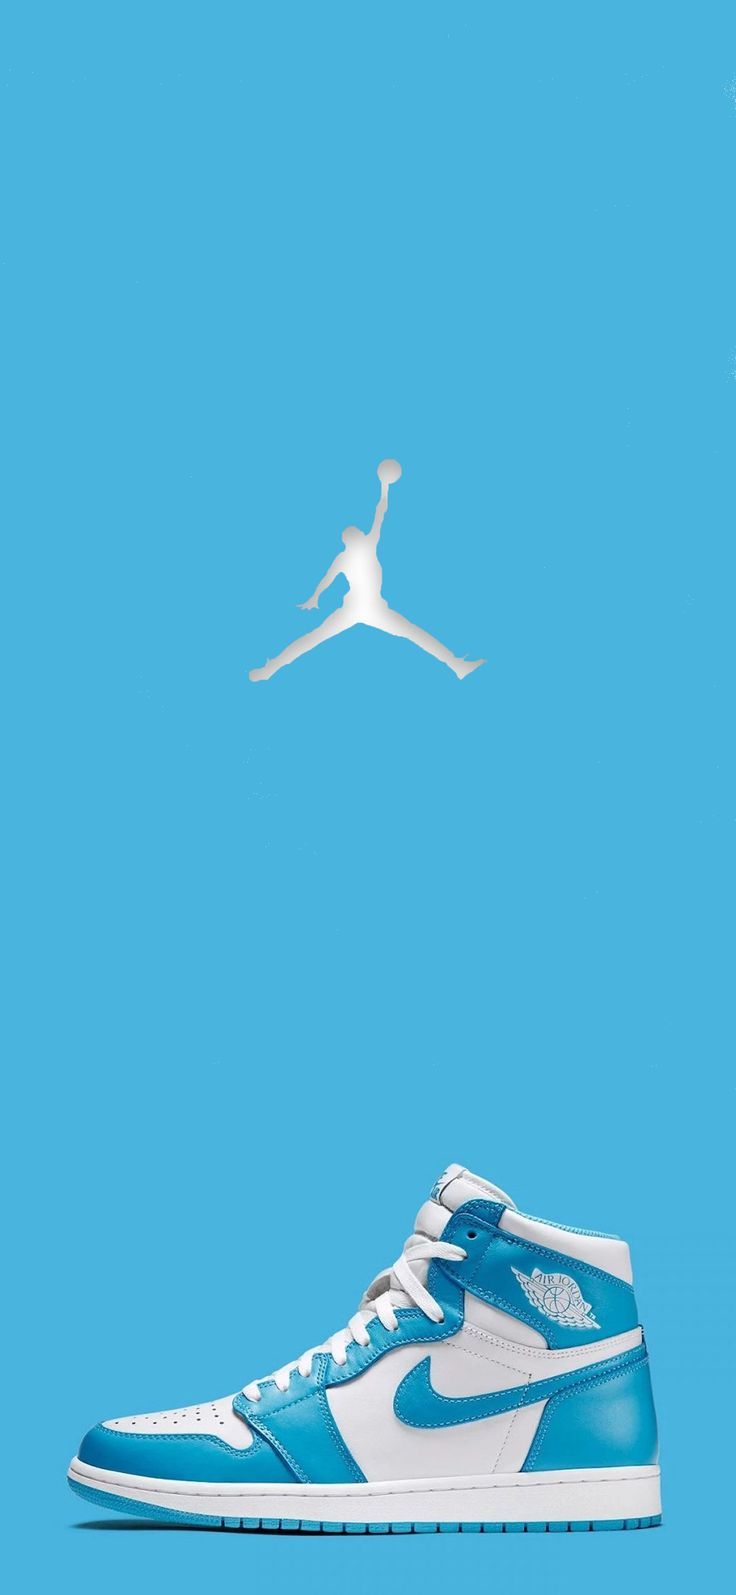 Air Jordan iPhone Wallpapers Top 25 Best Air Jordan iPhone Wallpapers   Getty Wallpapers